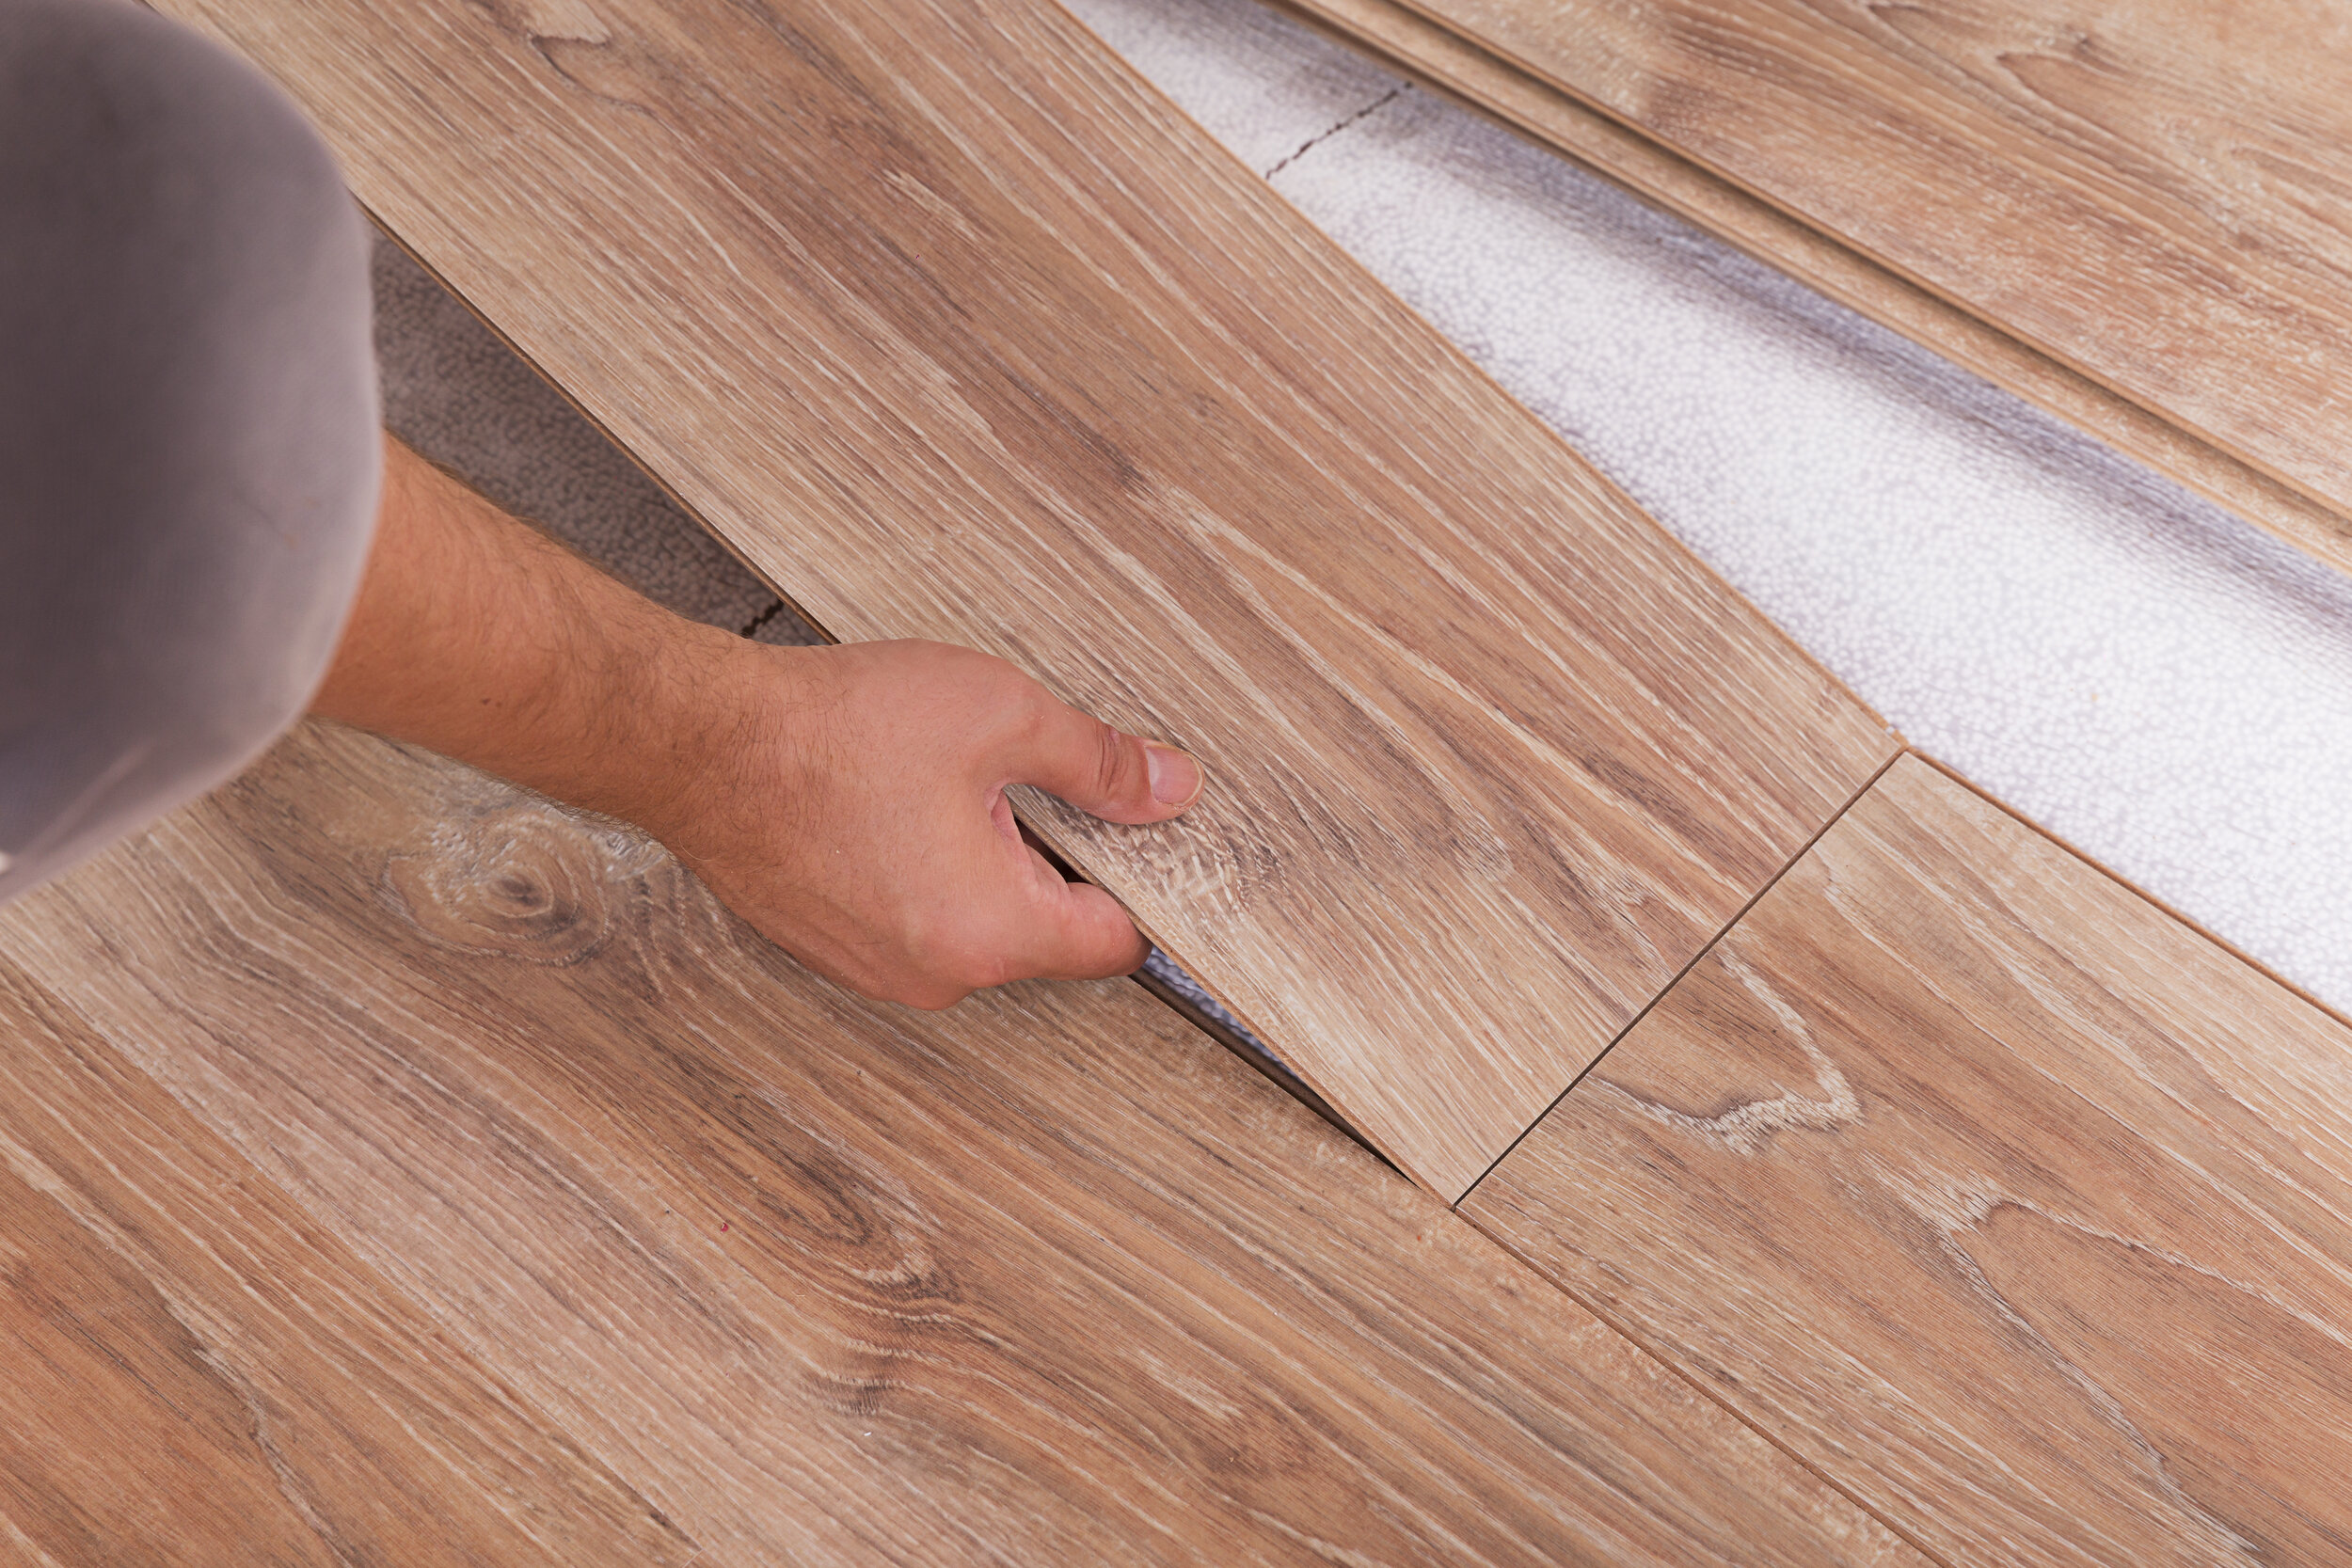 Waterproof Laminate Flooring, Best Waterproof Laminate Flooring For Basement